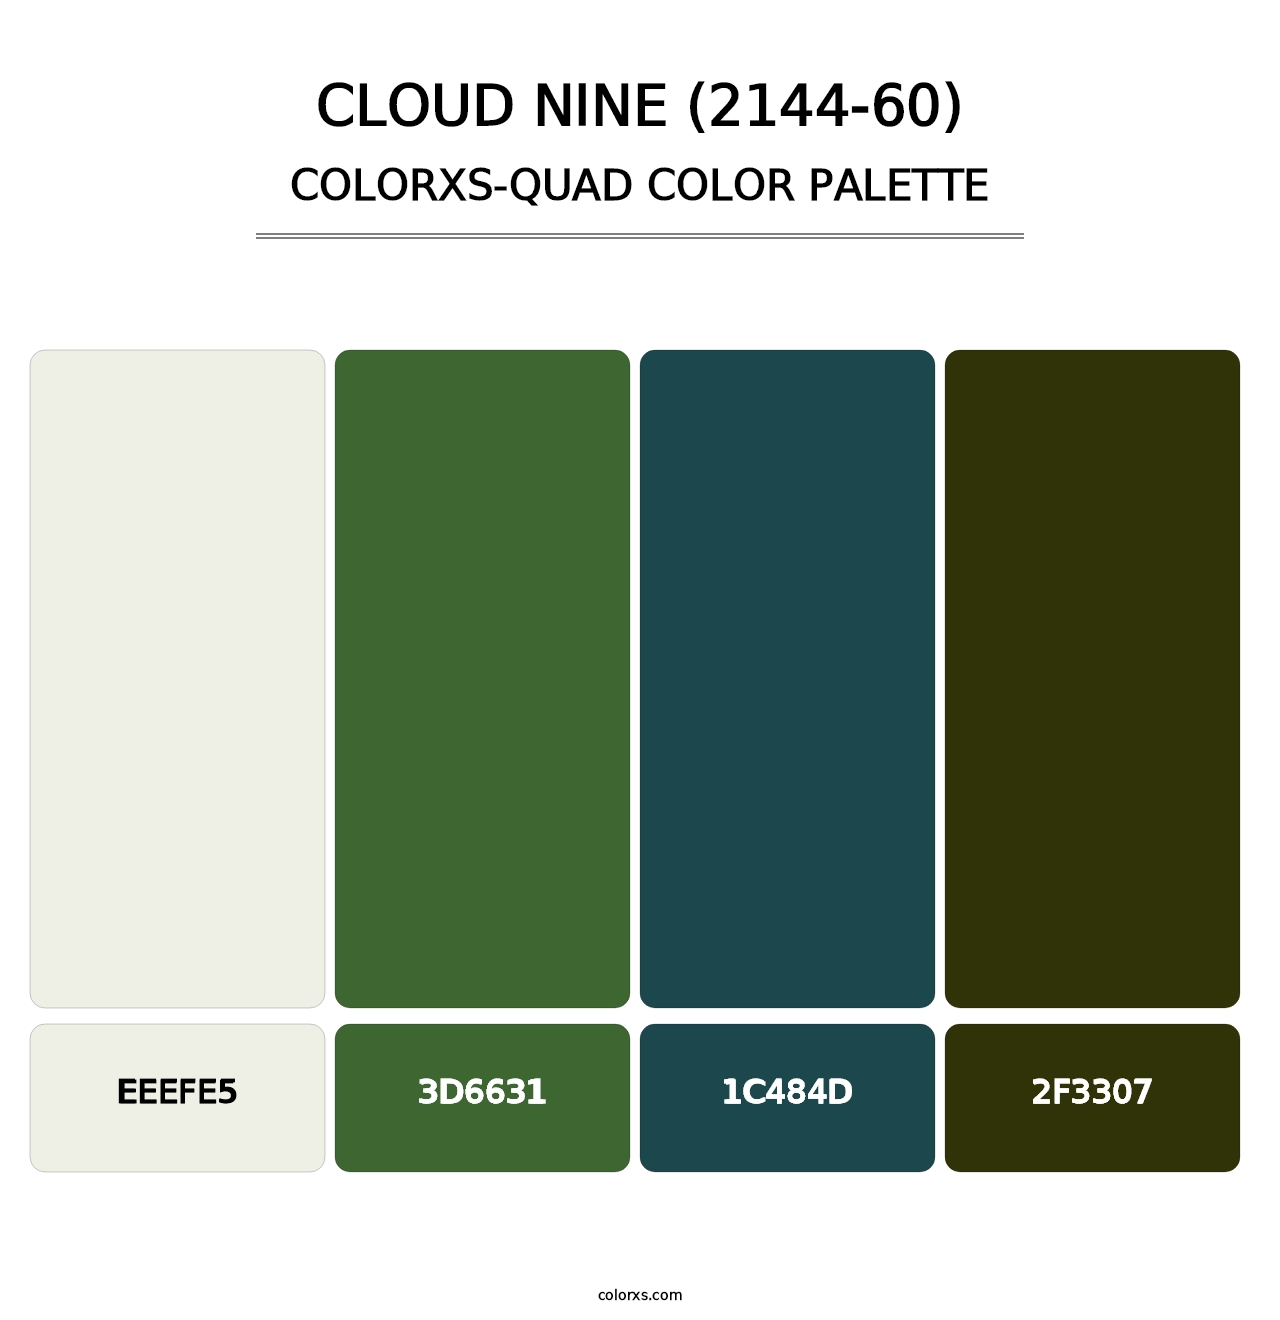 Cloud Nine (2144-60) - Colorxs Quad Palette